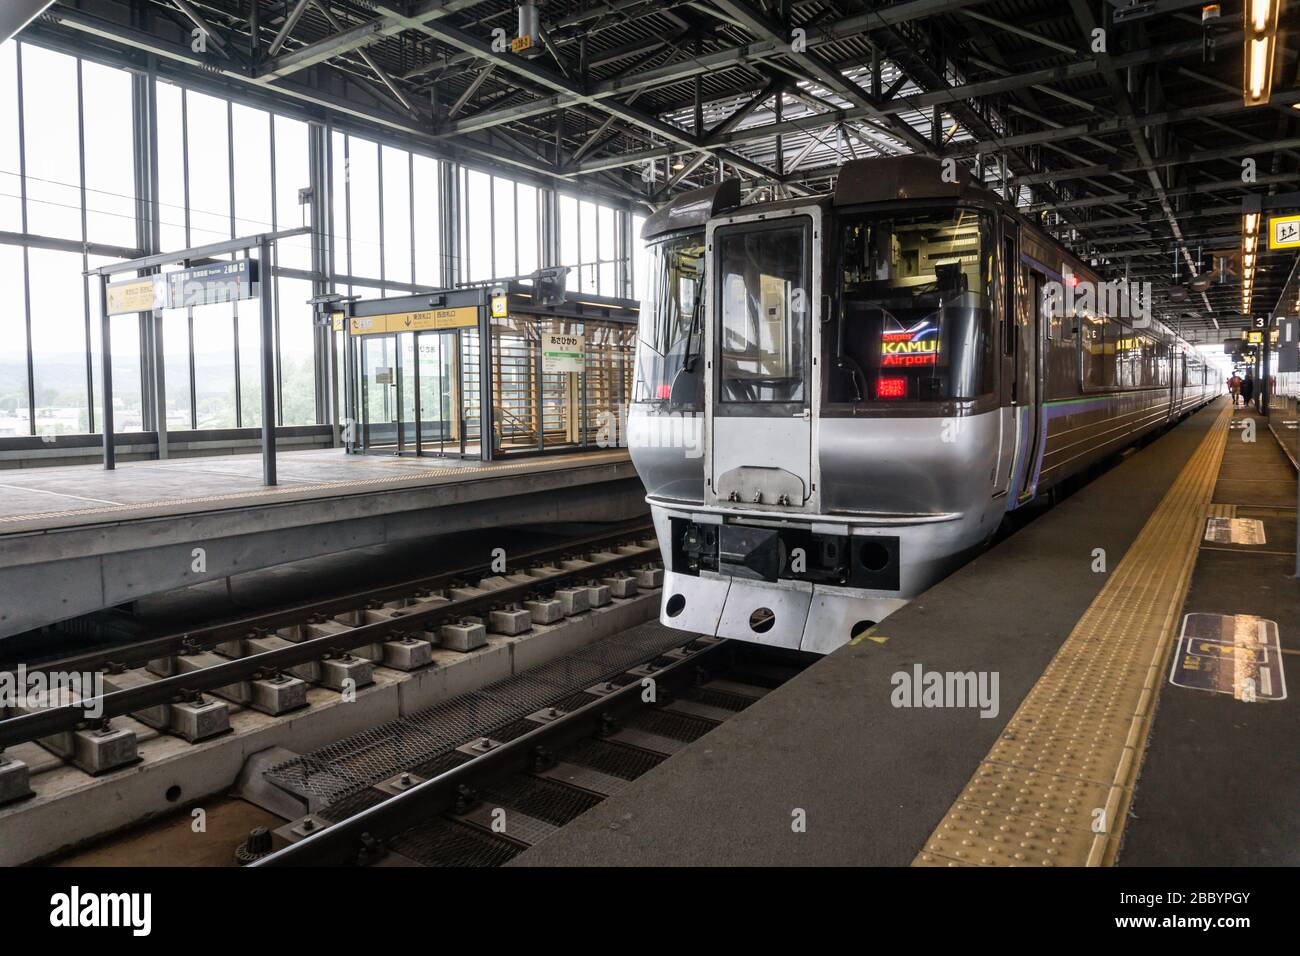 View of a JR train waiting at platform 4 in Asahikawa Station, Hokkaido, Japan Stock Photo